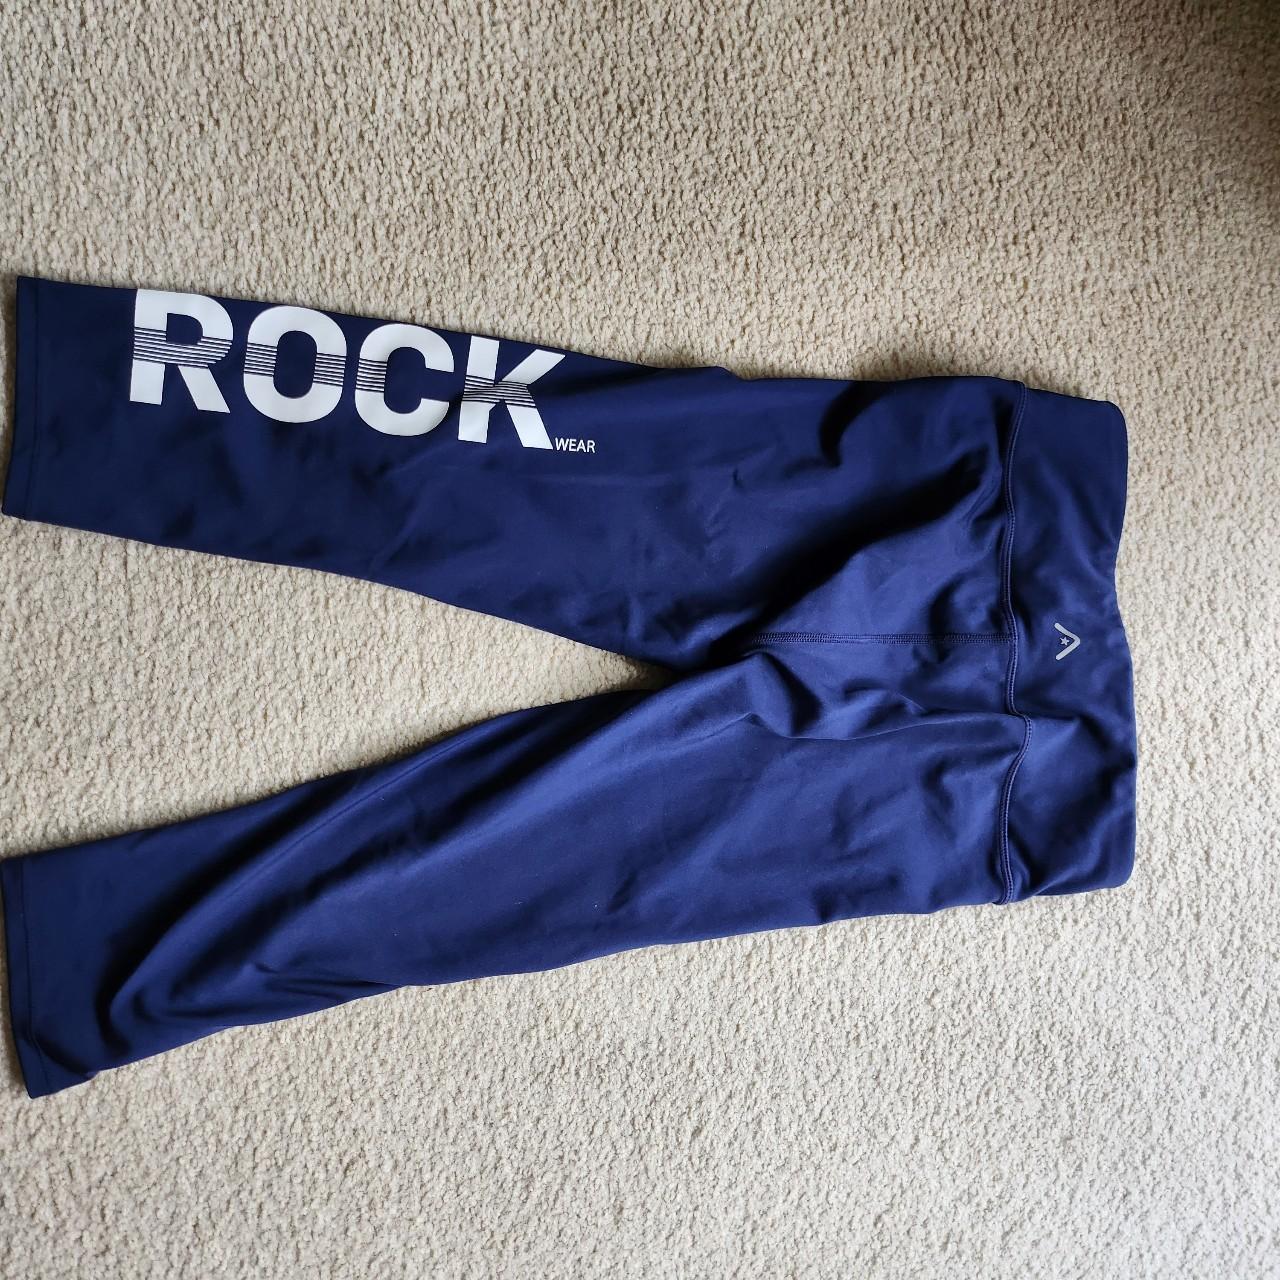 Rockwear 3/4 navy tights - Depop